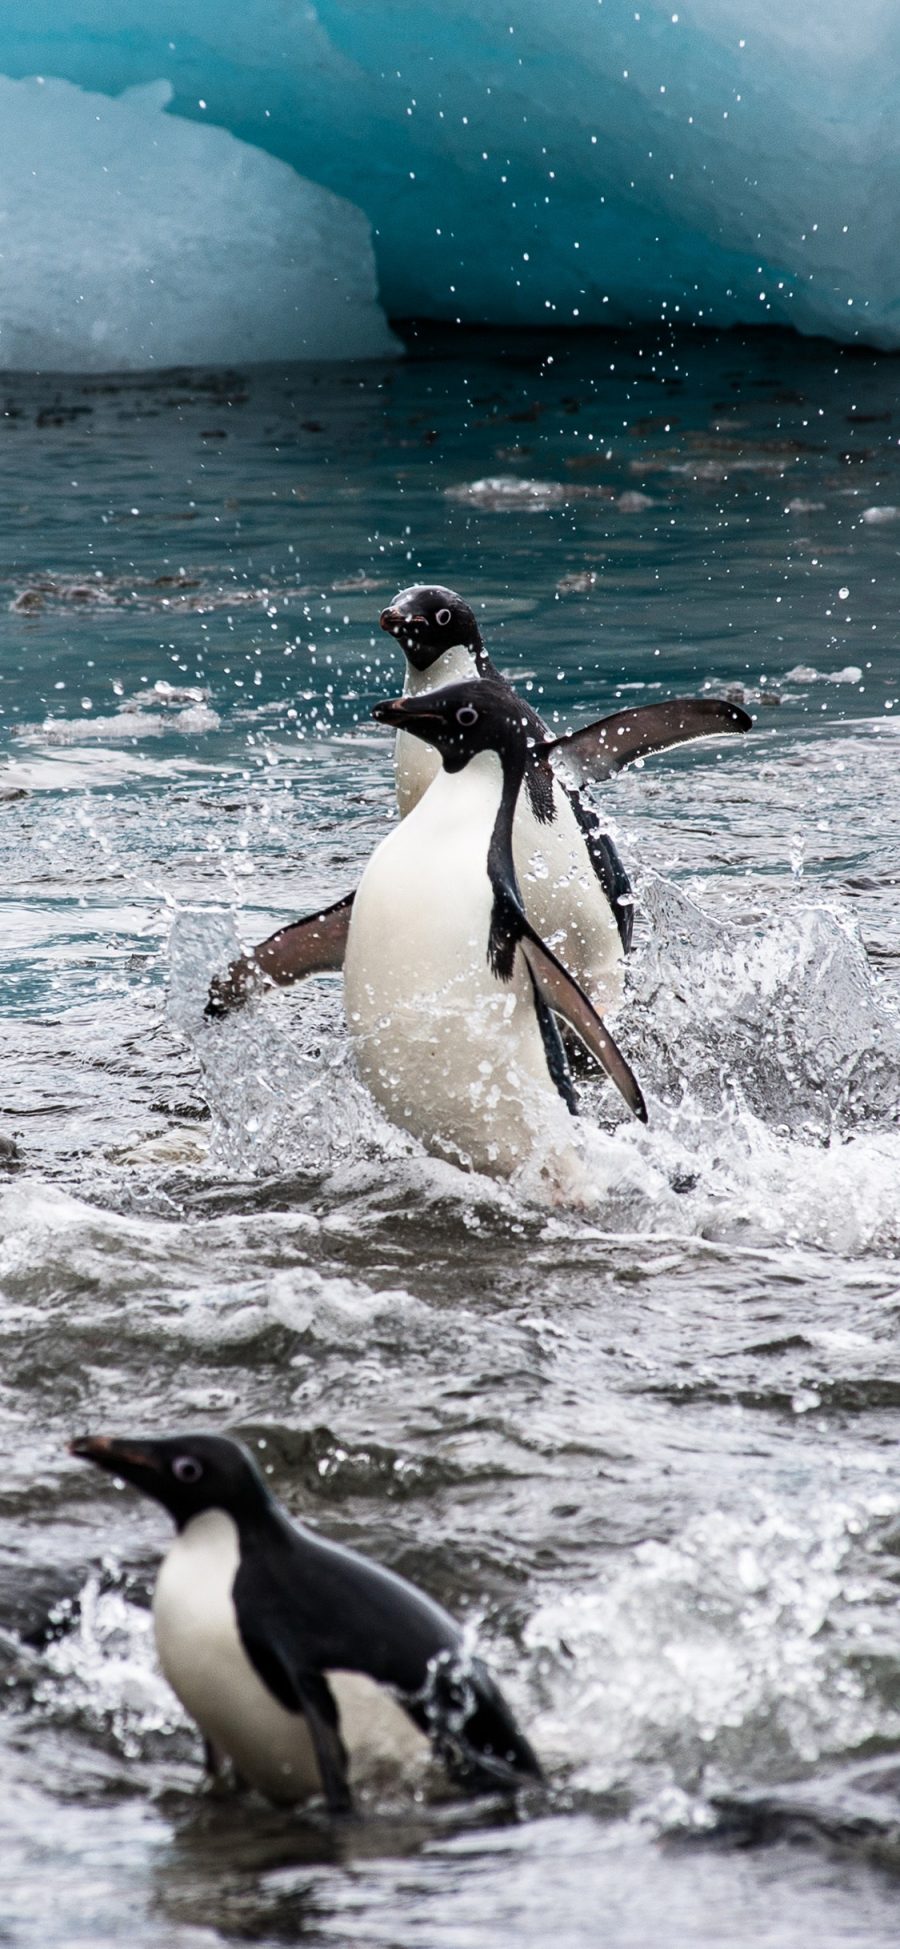 [2436×1125]南极 企鹅 觅食 保护动物 苹果手机壁纸图片